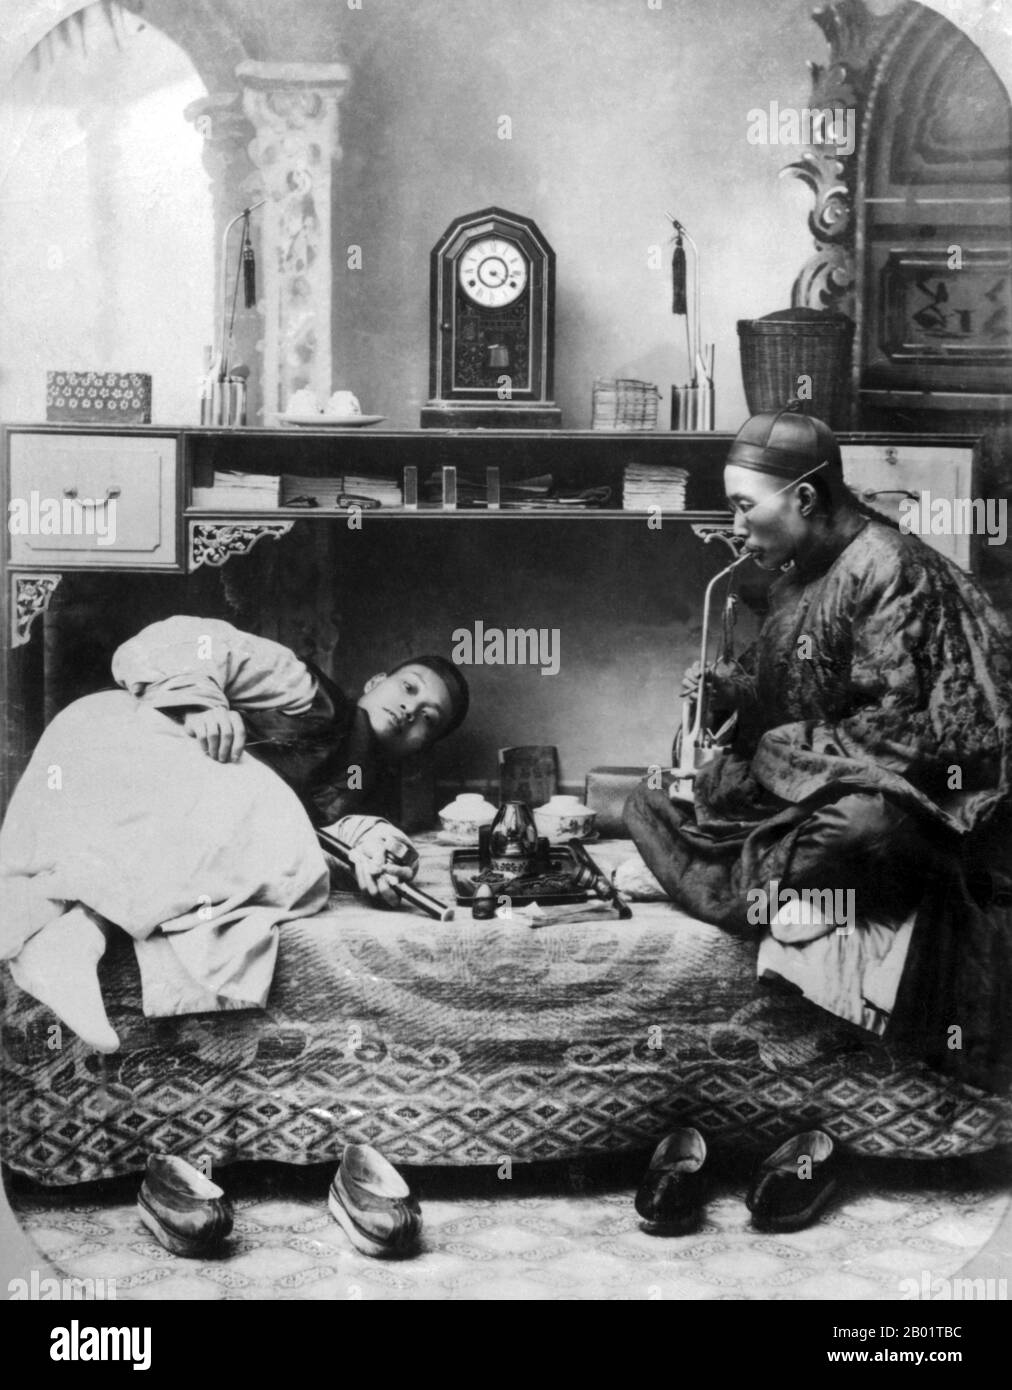 Chine : fumeurs d'opium dans un studio de Shanghai, vers 1865. Le pavot à opium, Papaver somniferum, est l'espèce de plante dont sont extraits l'opium et les graines de pavot. L'opium est la source de nombreux opiacés, dont la morphine, la thébaïne, la codéine, la papavérine et la noscapine. Le nom botanique latin signifie le « pavot qui apporte le sommeil », se référant aux propriétés sédatives de certains de ces opiacés. Banque D'Images